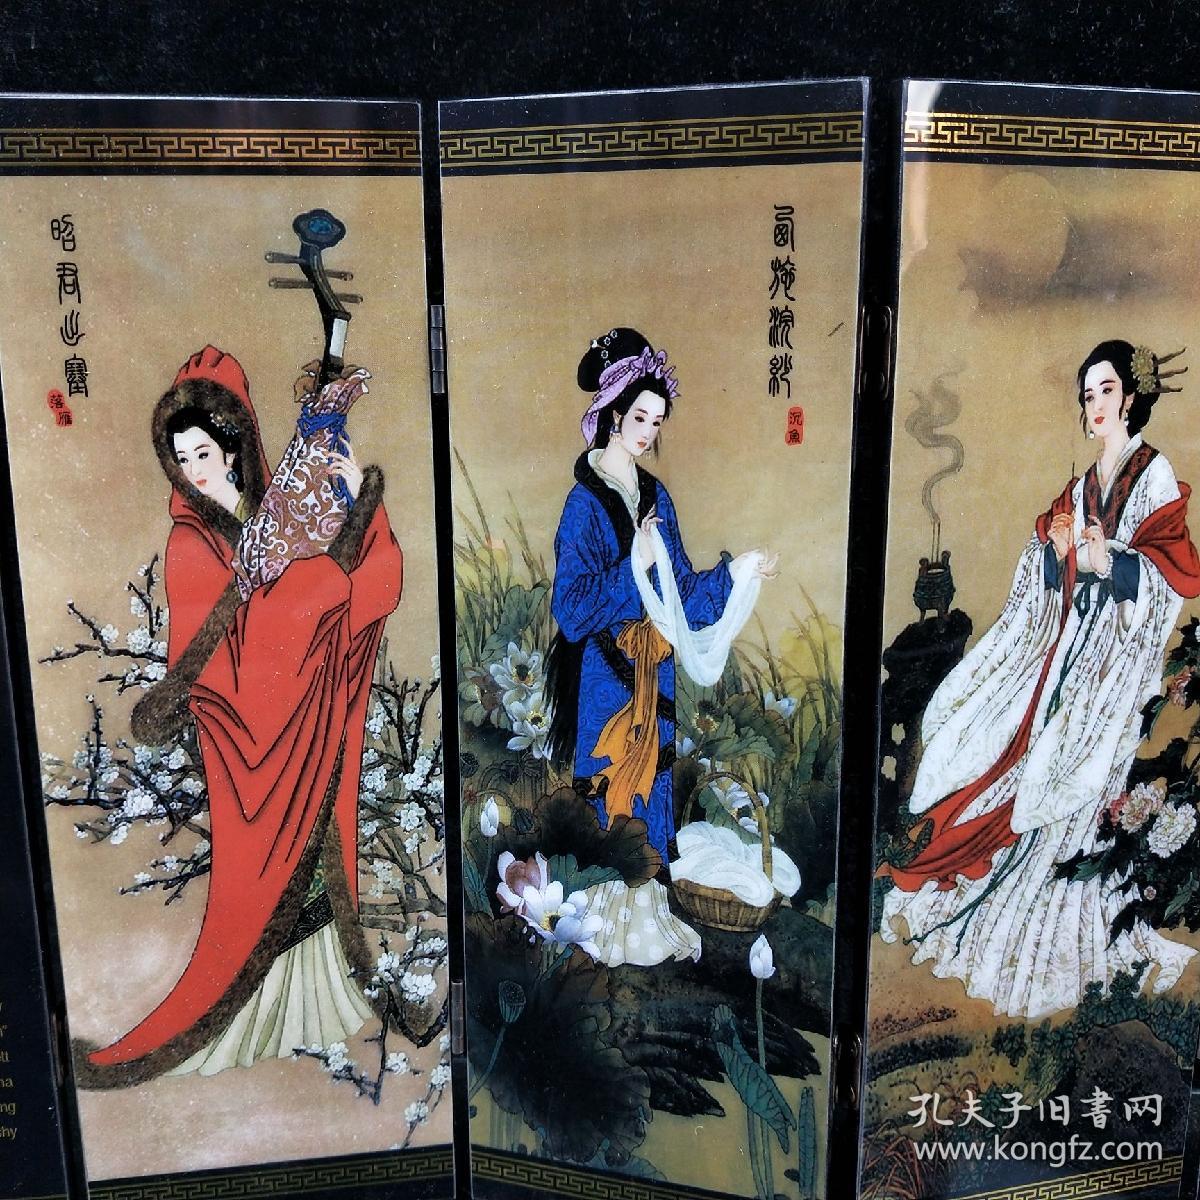 中国四大美女屏风,手绘四大美女,绘画细致,形象生动,人物面目表情清晰